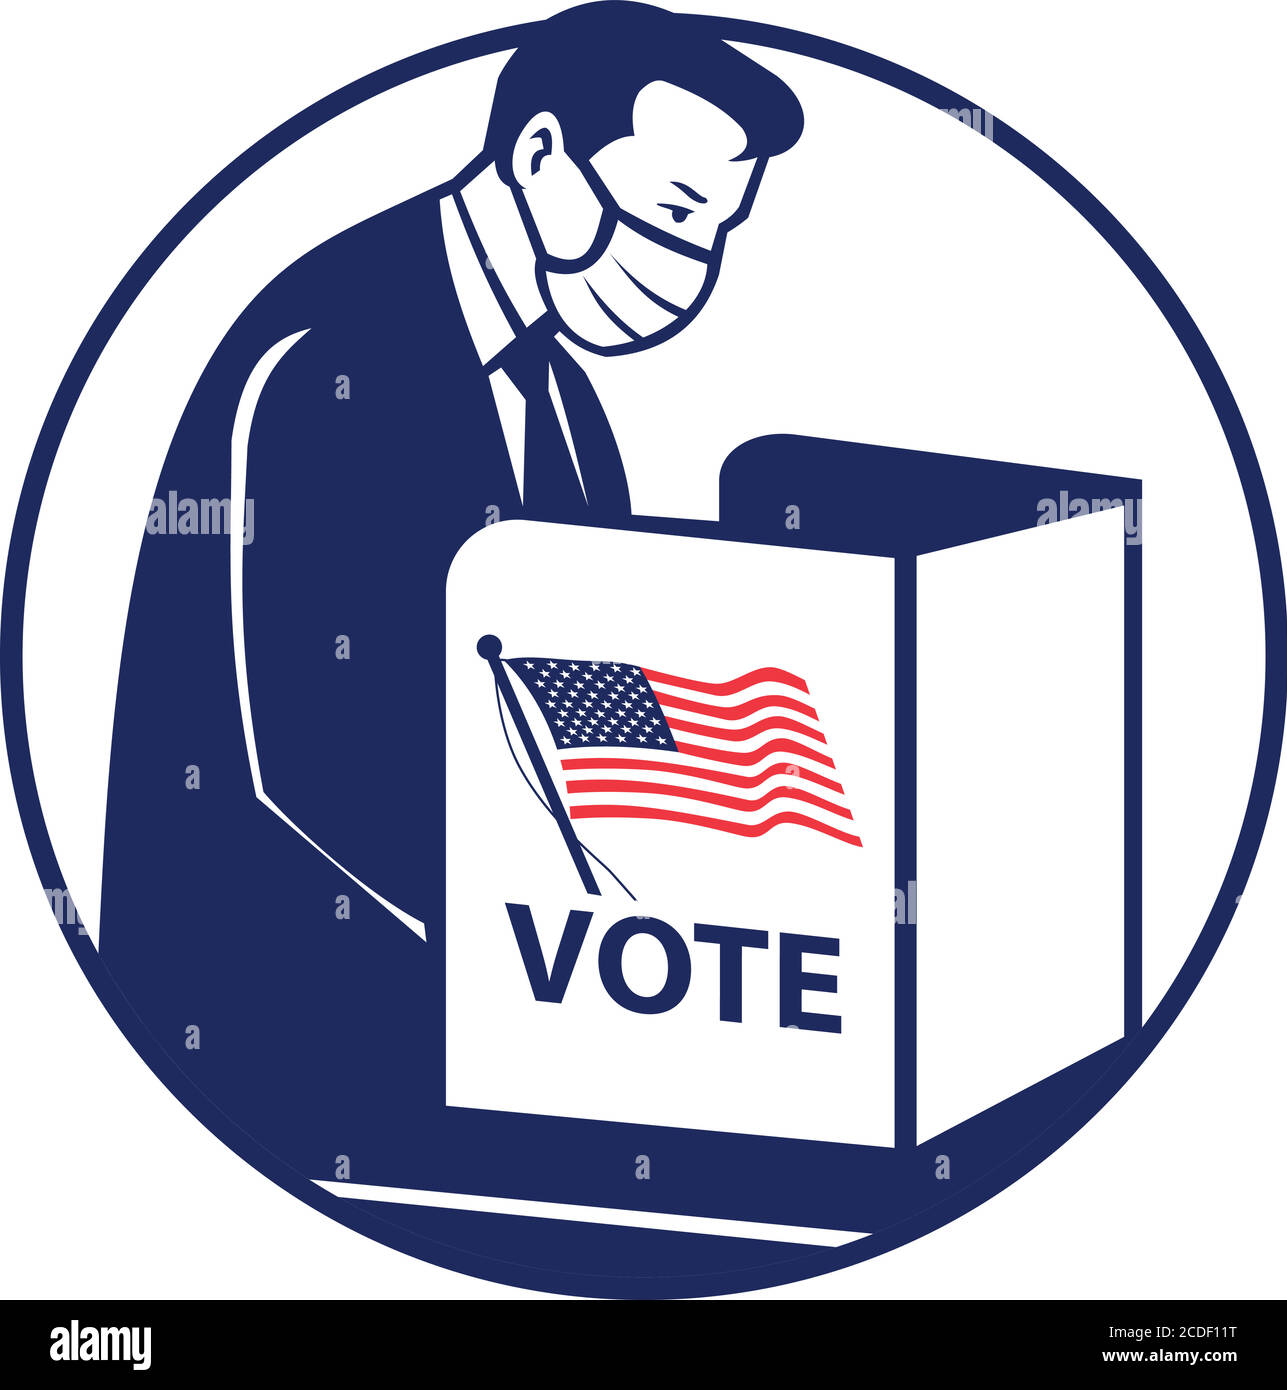 Illustrazione in stile retrò di un elettore americano in cabina di votazione o il sistema di polling indossando una maschera facciale o una copertura facciale riempimento del ballottaggio durante il coronovir Illustrazione Vettoriale